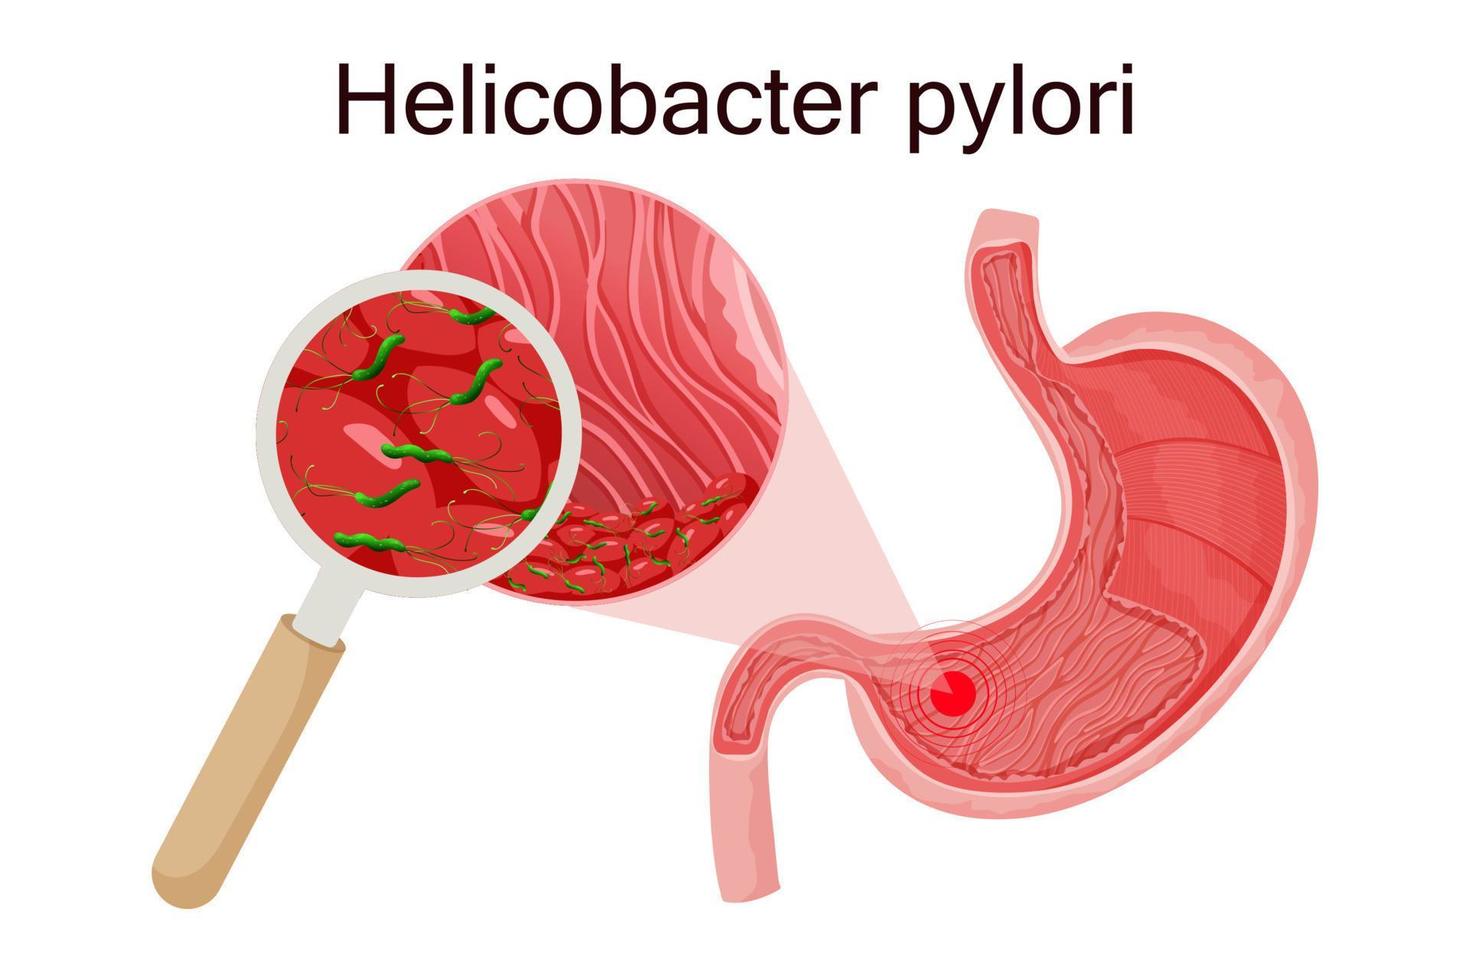 gastrite causada por helicobacter pylori no estômago sob lupa. ilustração vetorial detalhada vetor